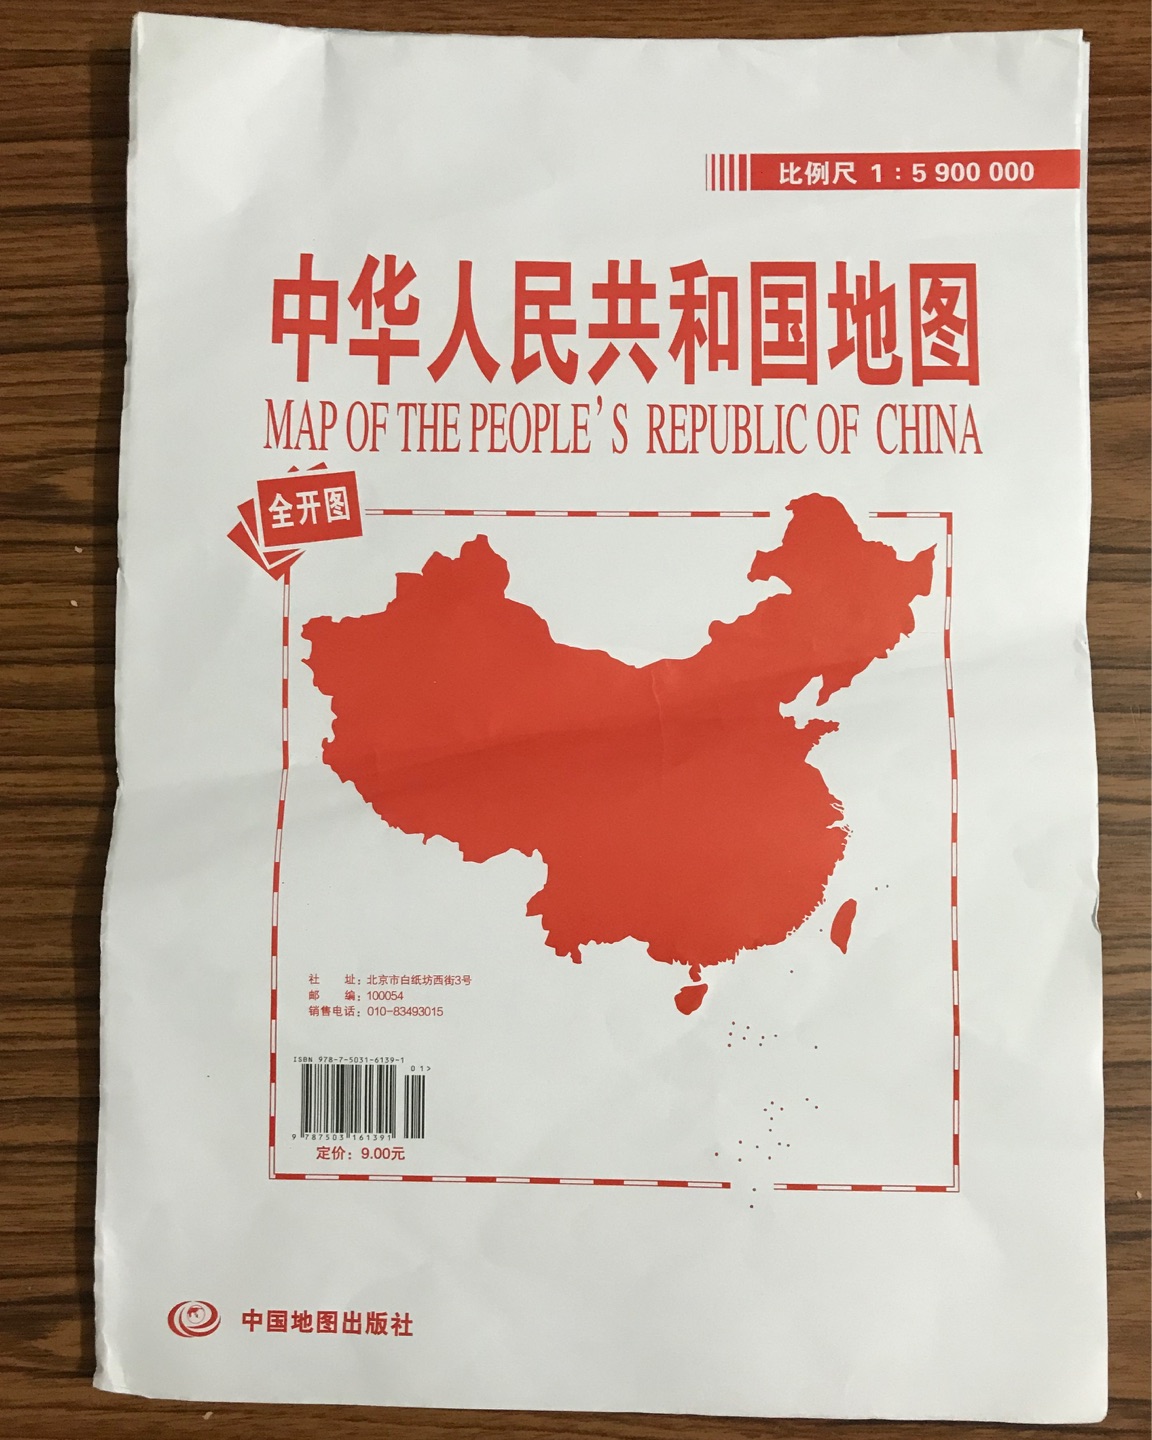 ??中国地图+世界地图（全开 袋装）升级版收到。不错，印刷很清楚，是我喜欢的。